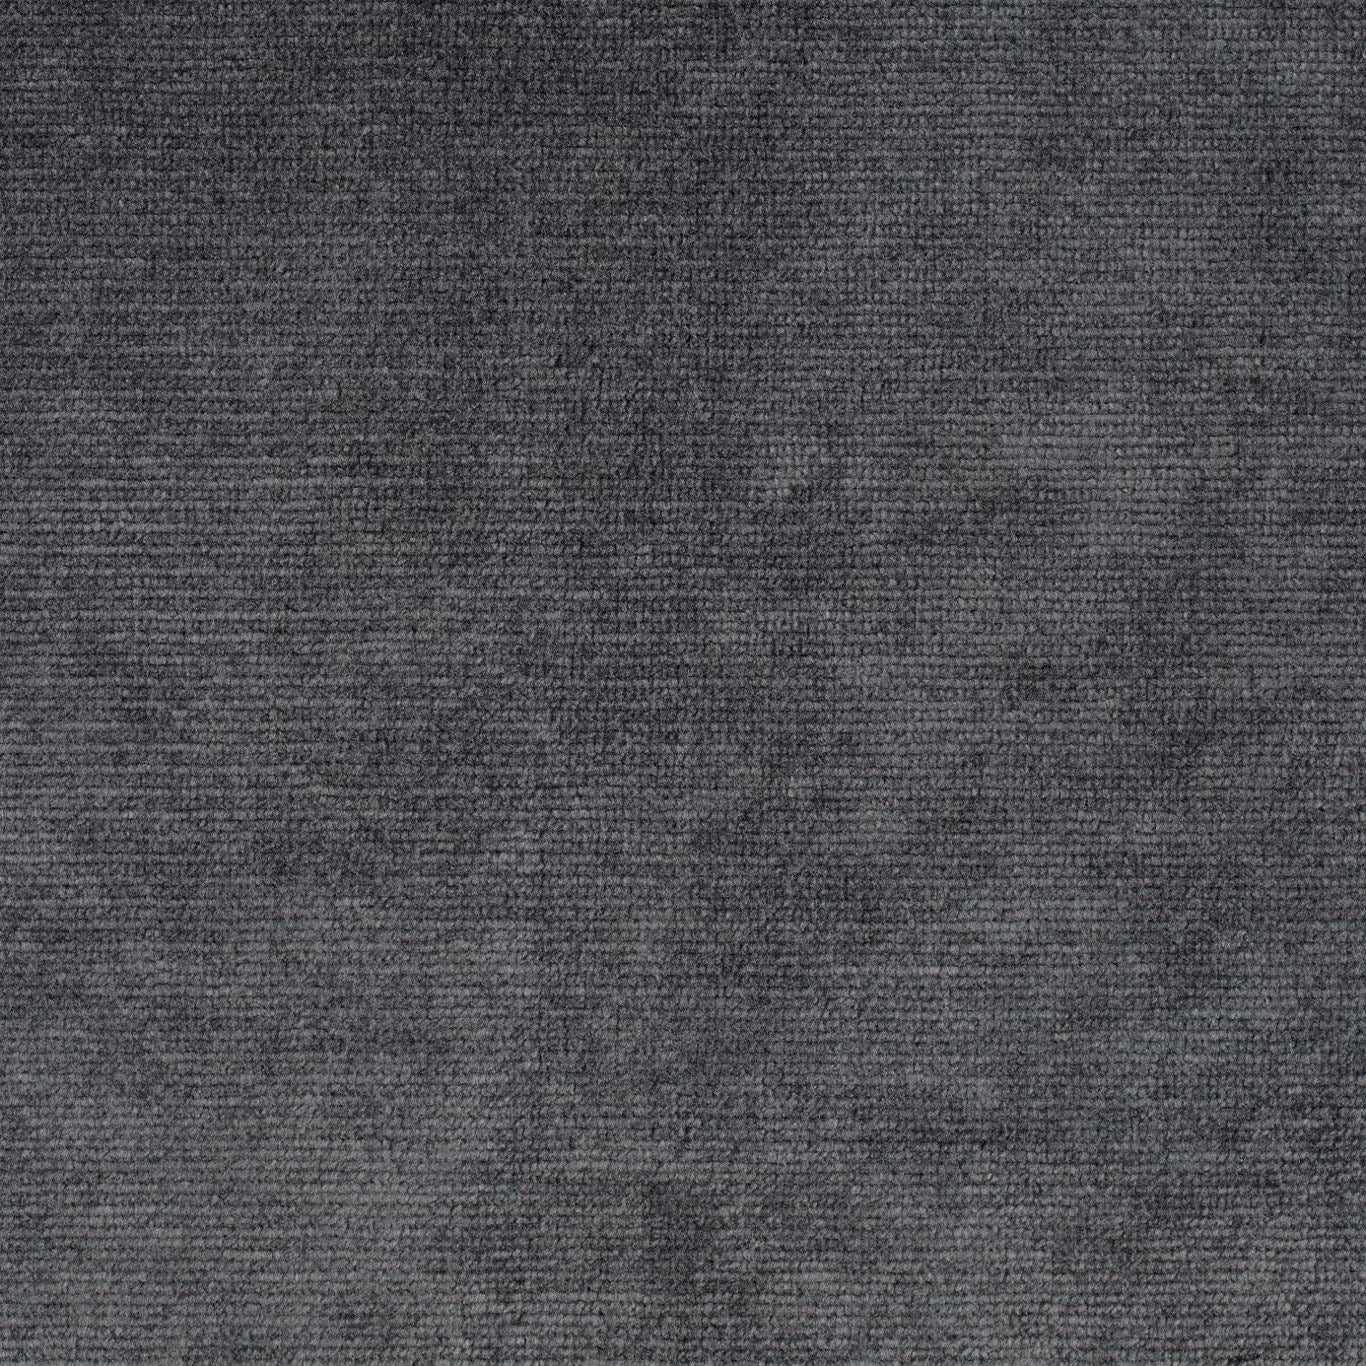 Boho Velvets Fabric by Sanderson - DVLV235270 - Pewter